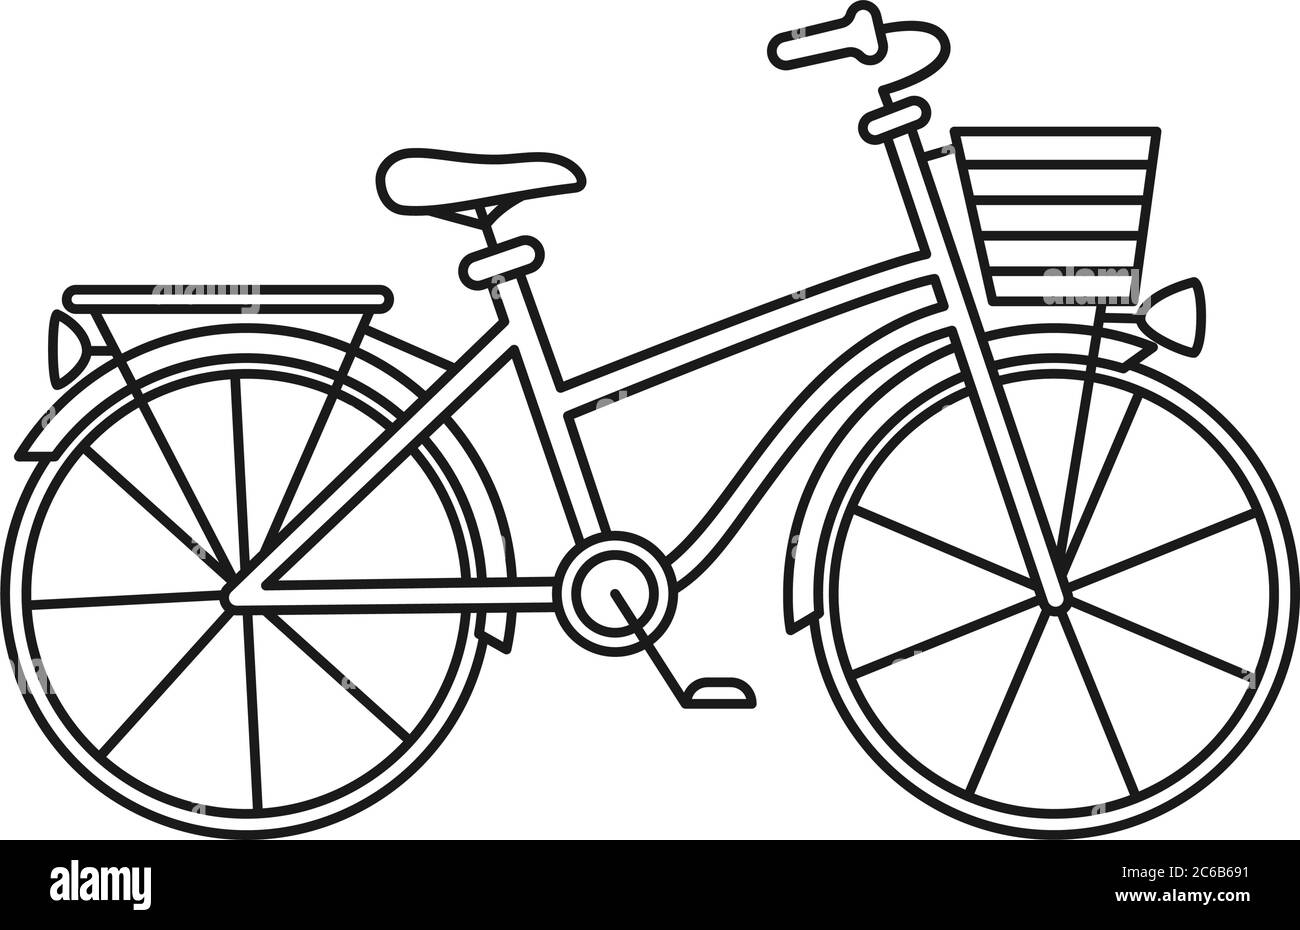 Bicicletta urbana line art in bianco e nero. Illustrazione Vettoriale